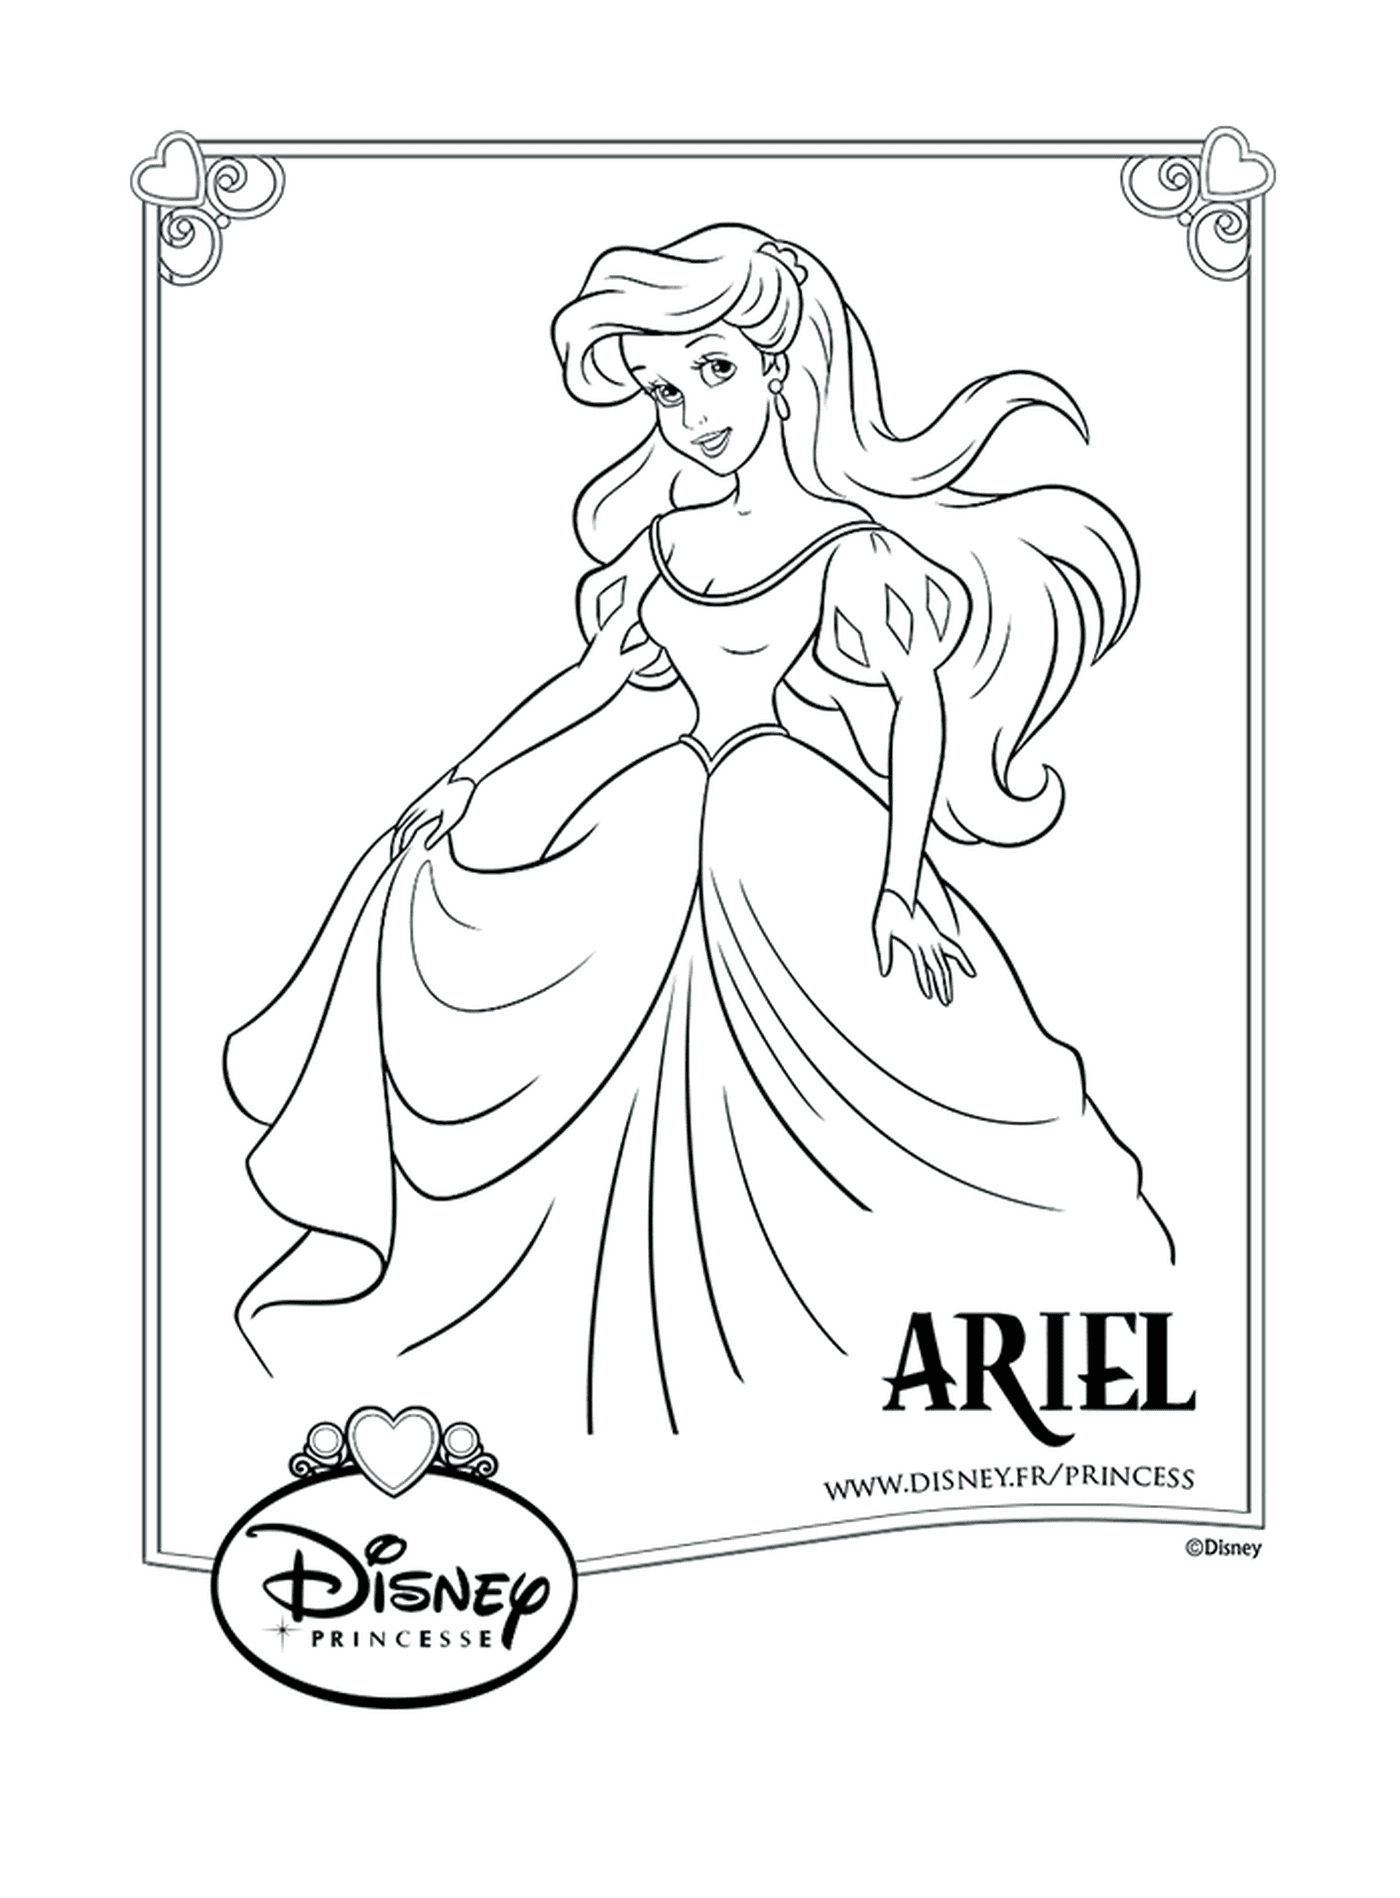  Ariel, ein langhaariges Mädchen 